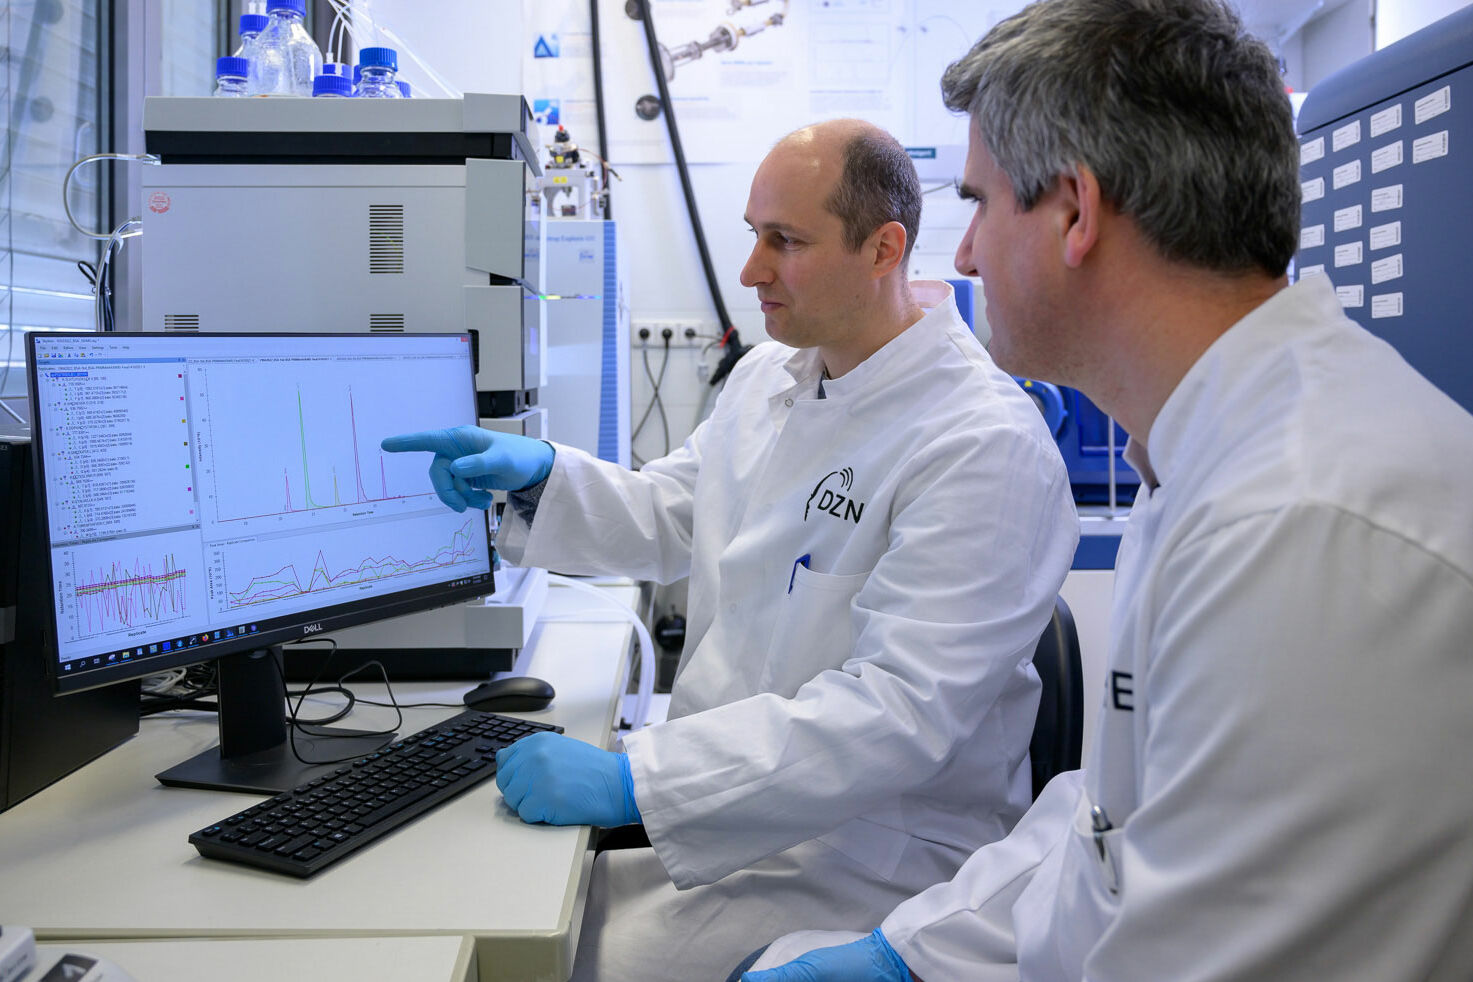 Bild zeigt Patrick Öckl und einen Mitarbeiter im Labor.